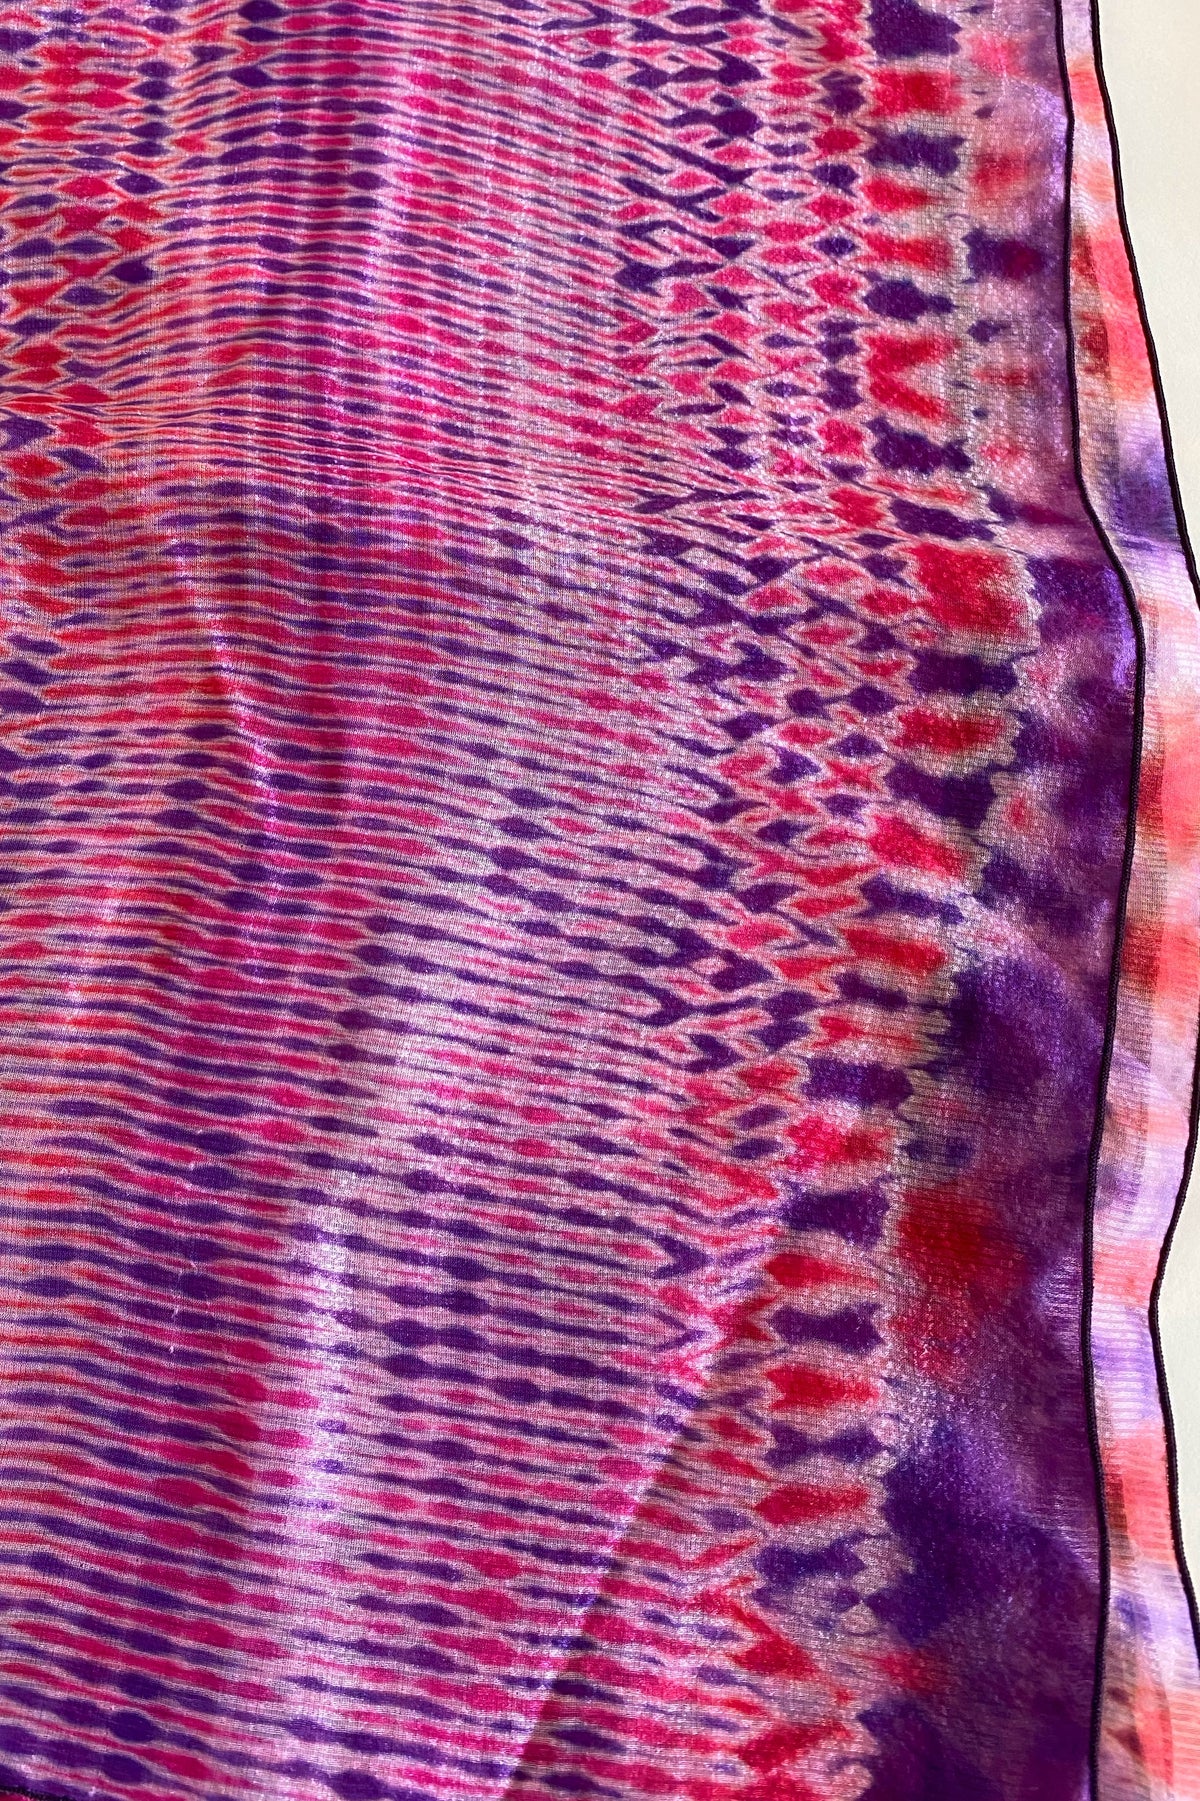 Shibori Dyed Silk Scarf in Purple & Pink